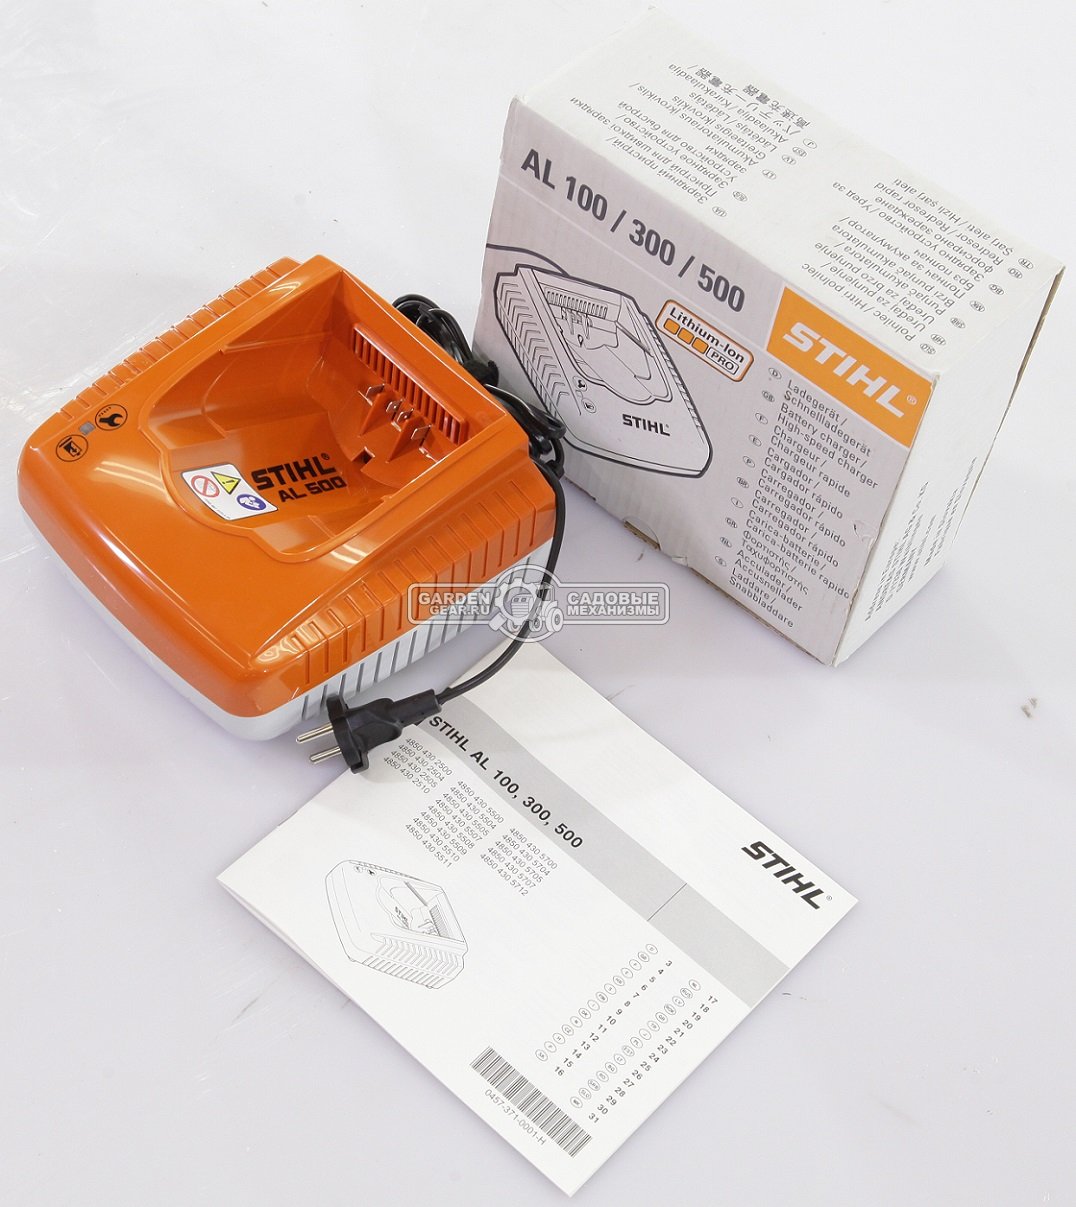 Зарядное устройство Stihl AL 500 для сверхбыстрой зарядки аккумуляторов AK, АР и и AR (SVK, LED индикатор заряда, 12 А., 1,3 кг.)